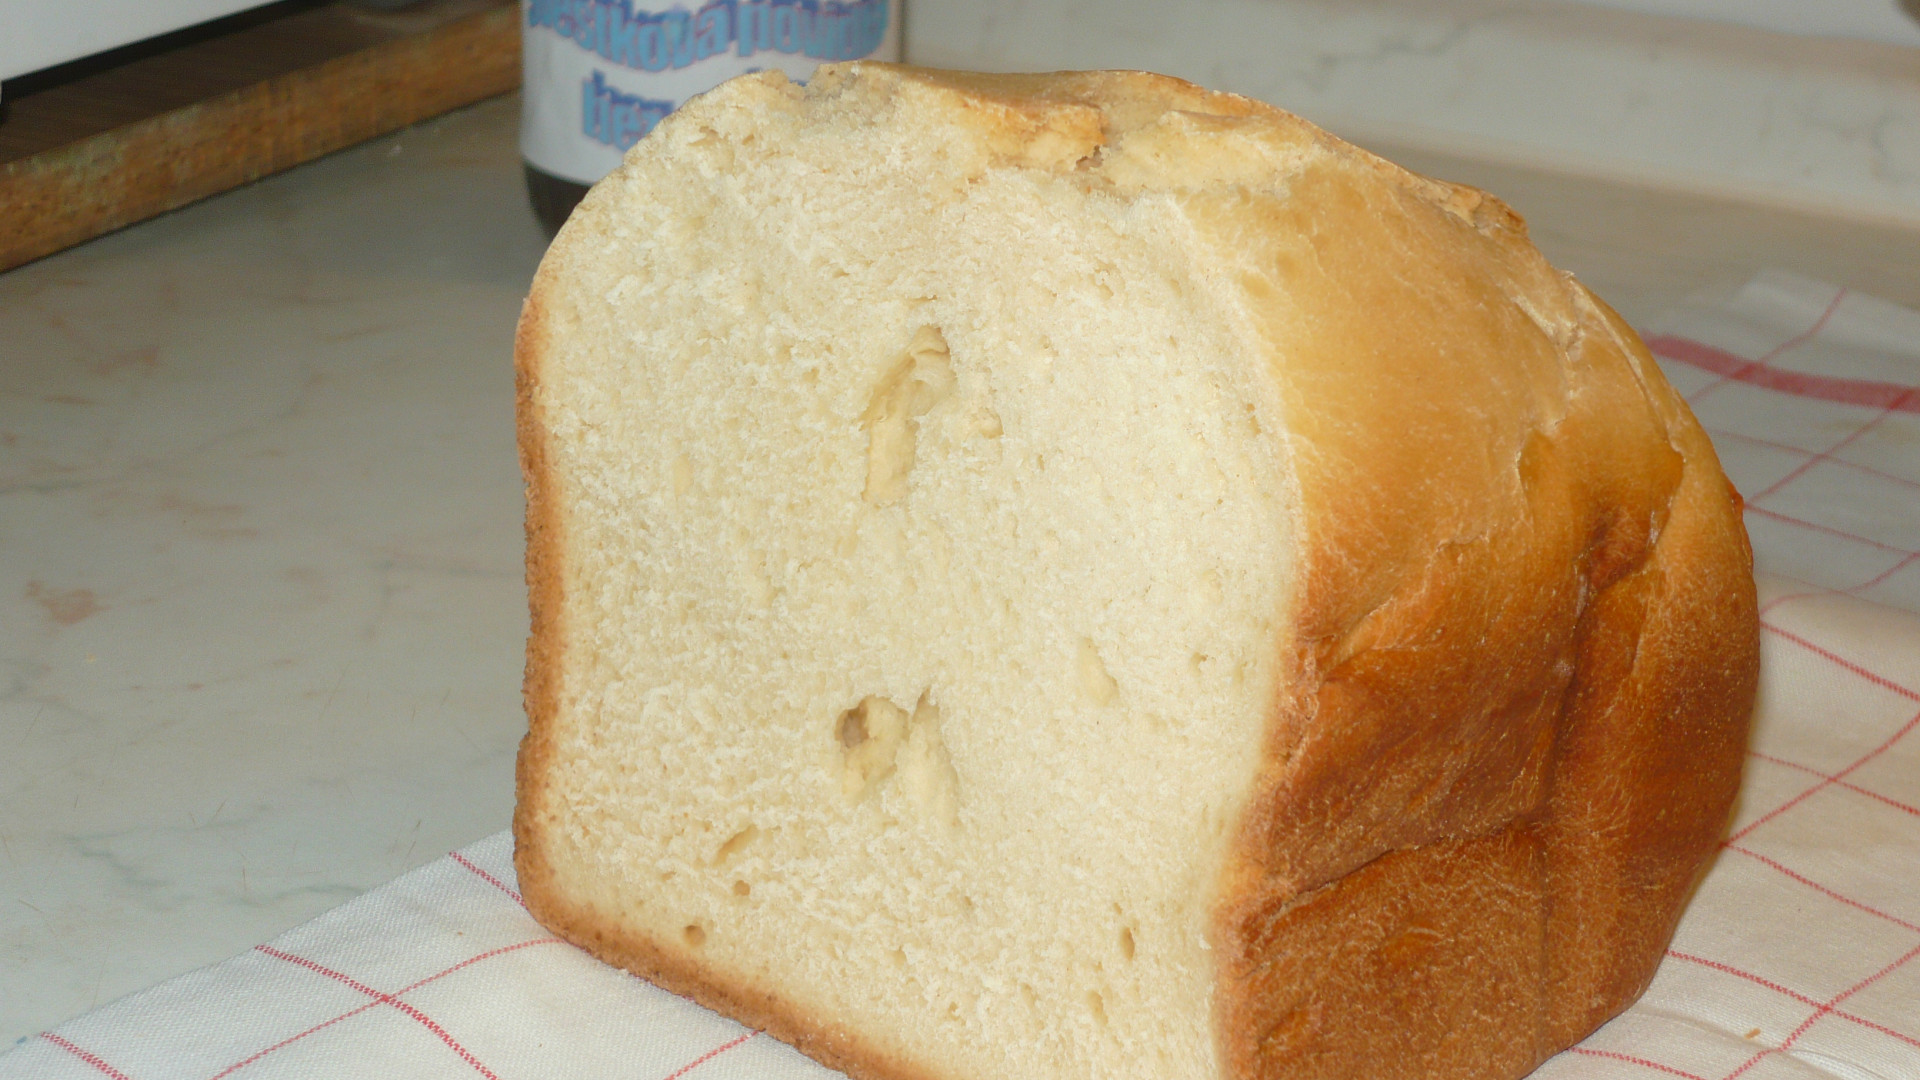 Sladký chléb z návodu k dom. pekárně